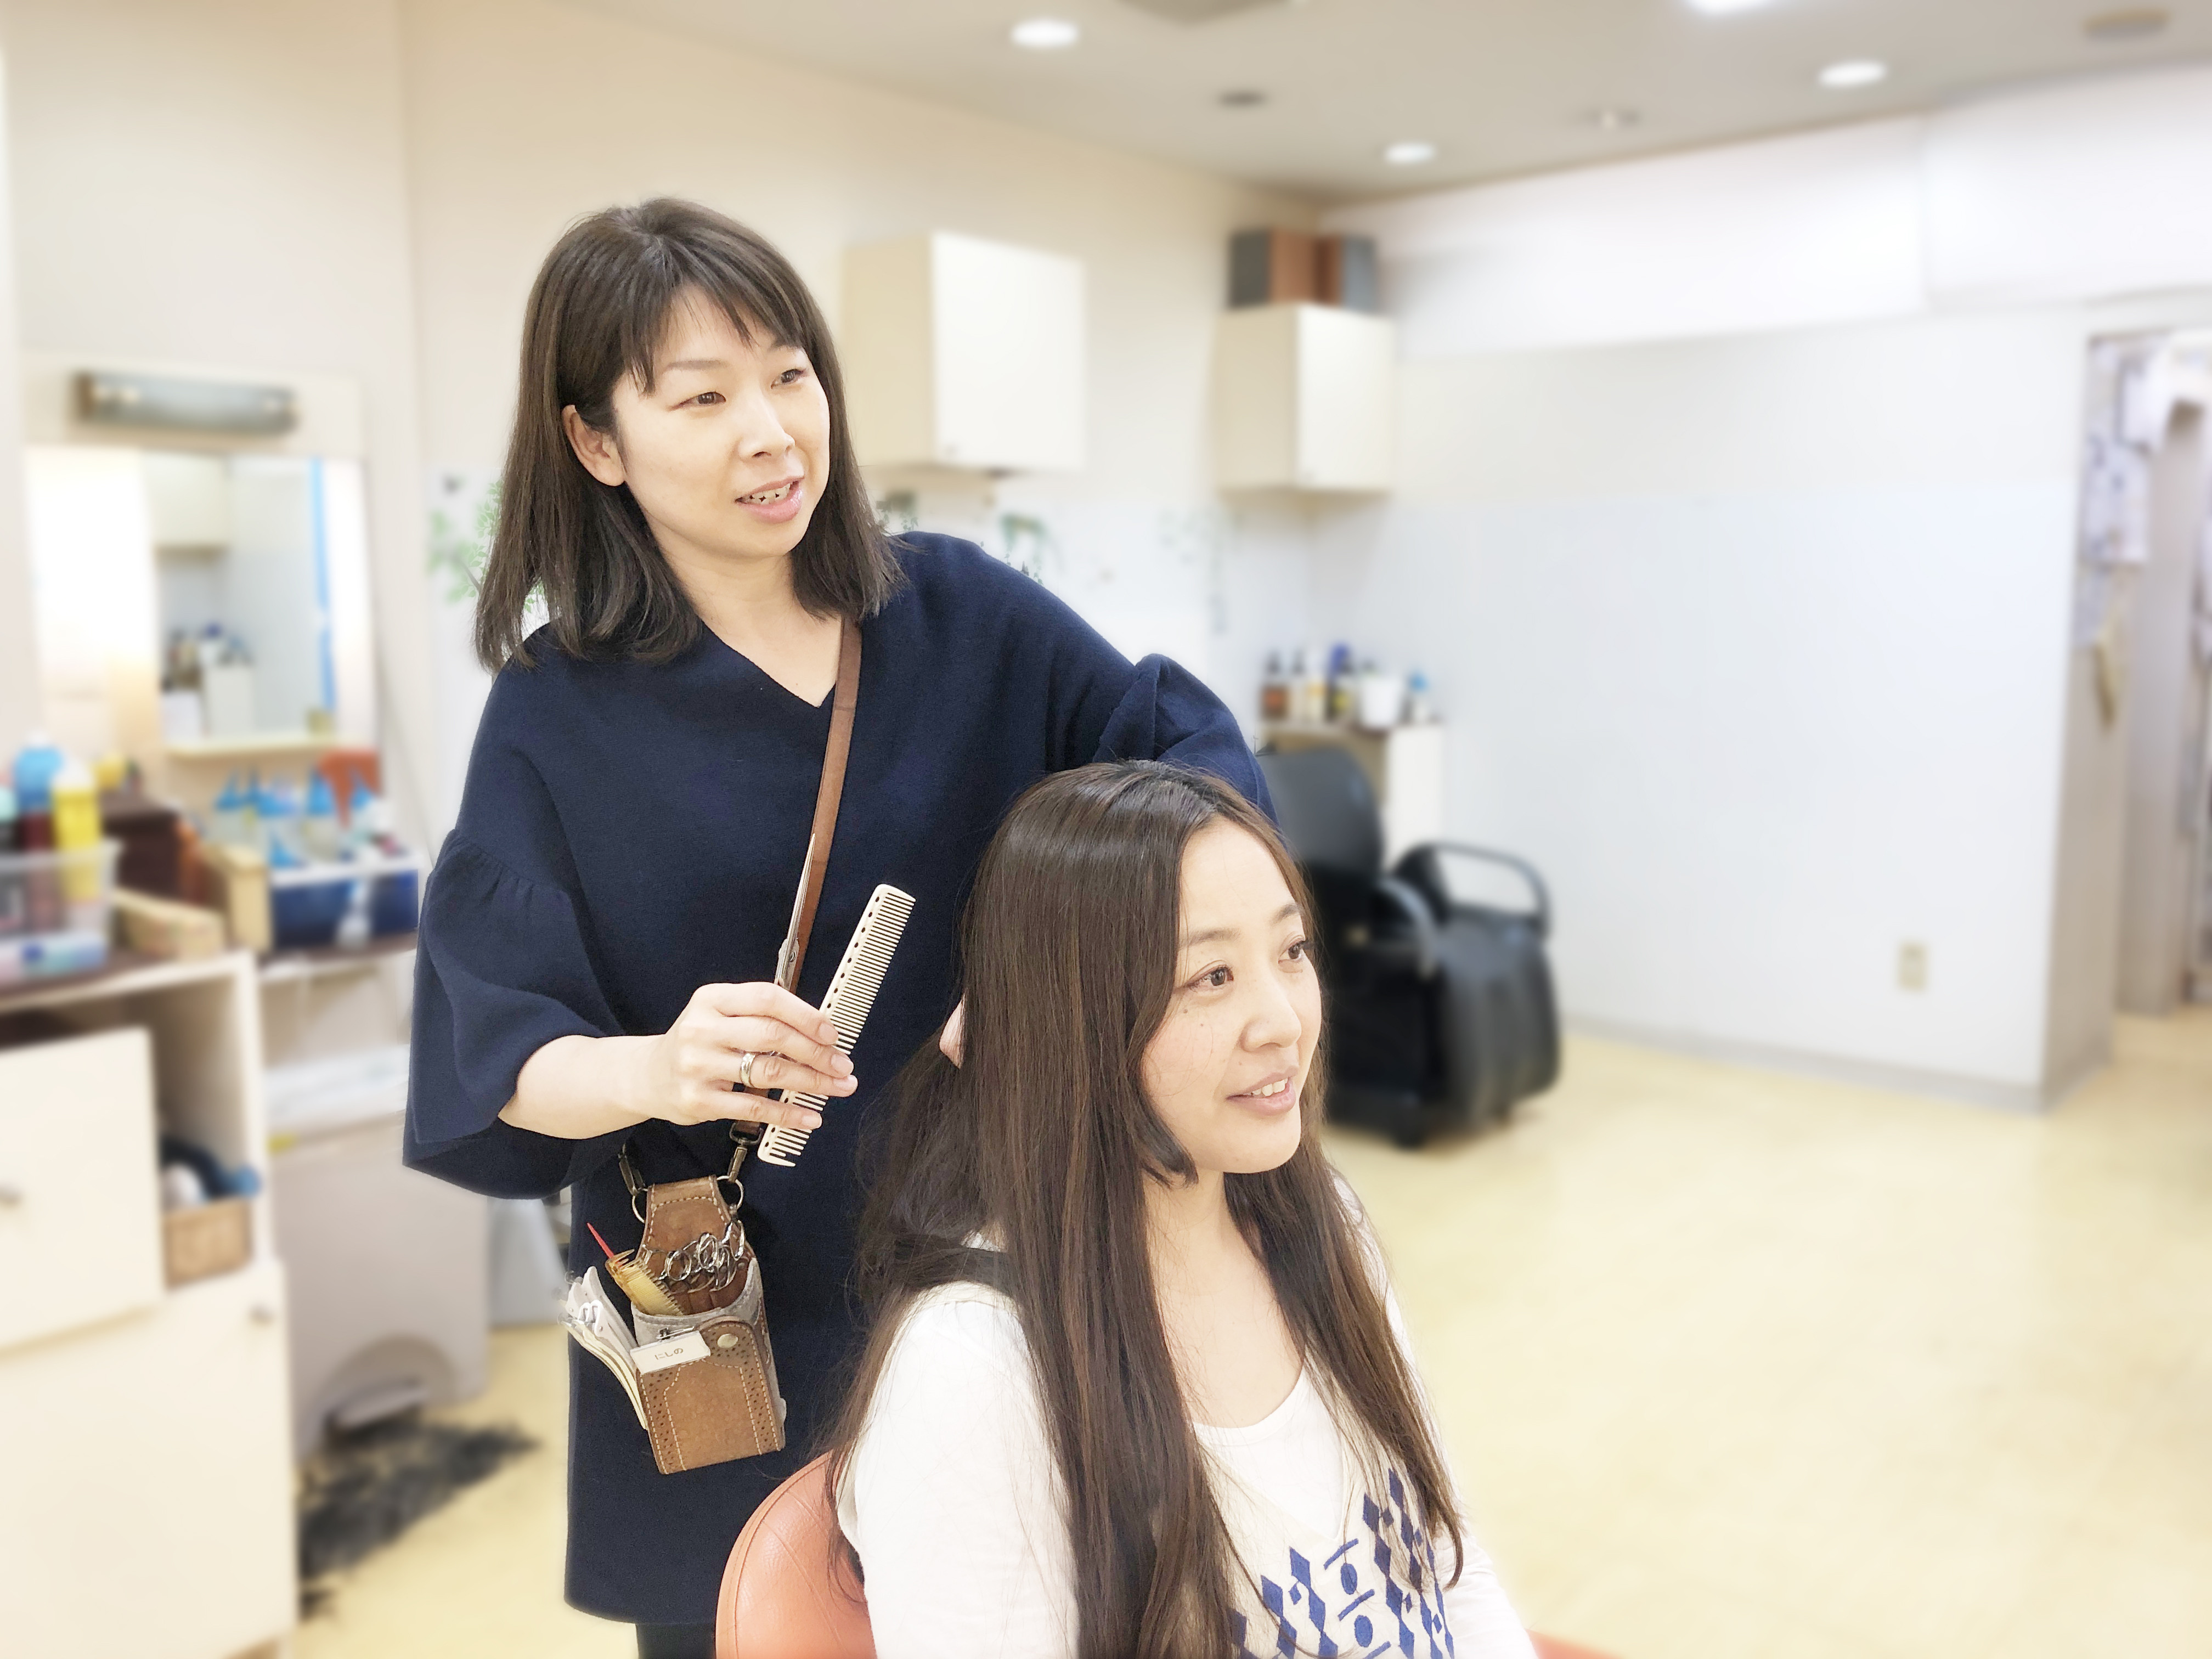 美容師求人 美容師スタイリスト 大泉学園 東京 ヘアーサロンシーズン 美容師の求人 転職 募集 美容師求人 Com 美容師 美容室の求人多数掲載